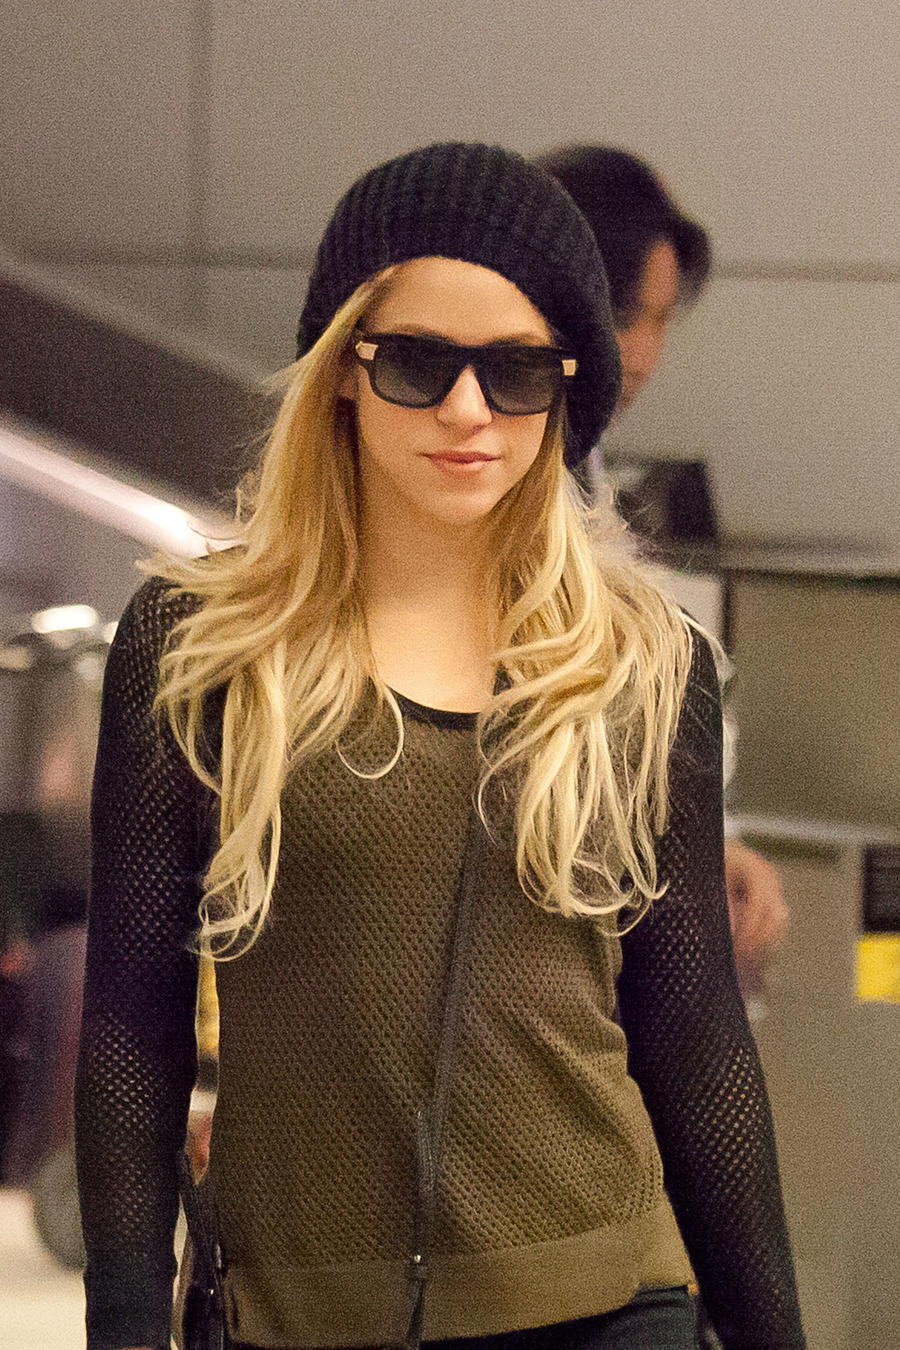 Shakira en el aeropuerto de Los Ángeles, en diciembre de 2013, con el cabello rubio y gorro.